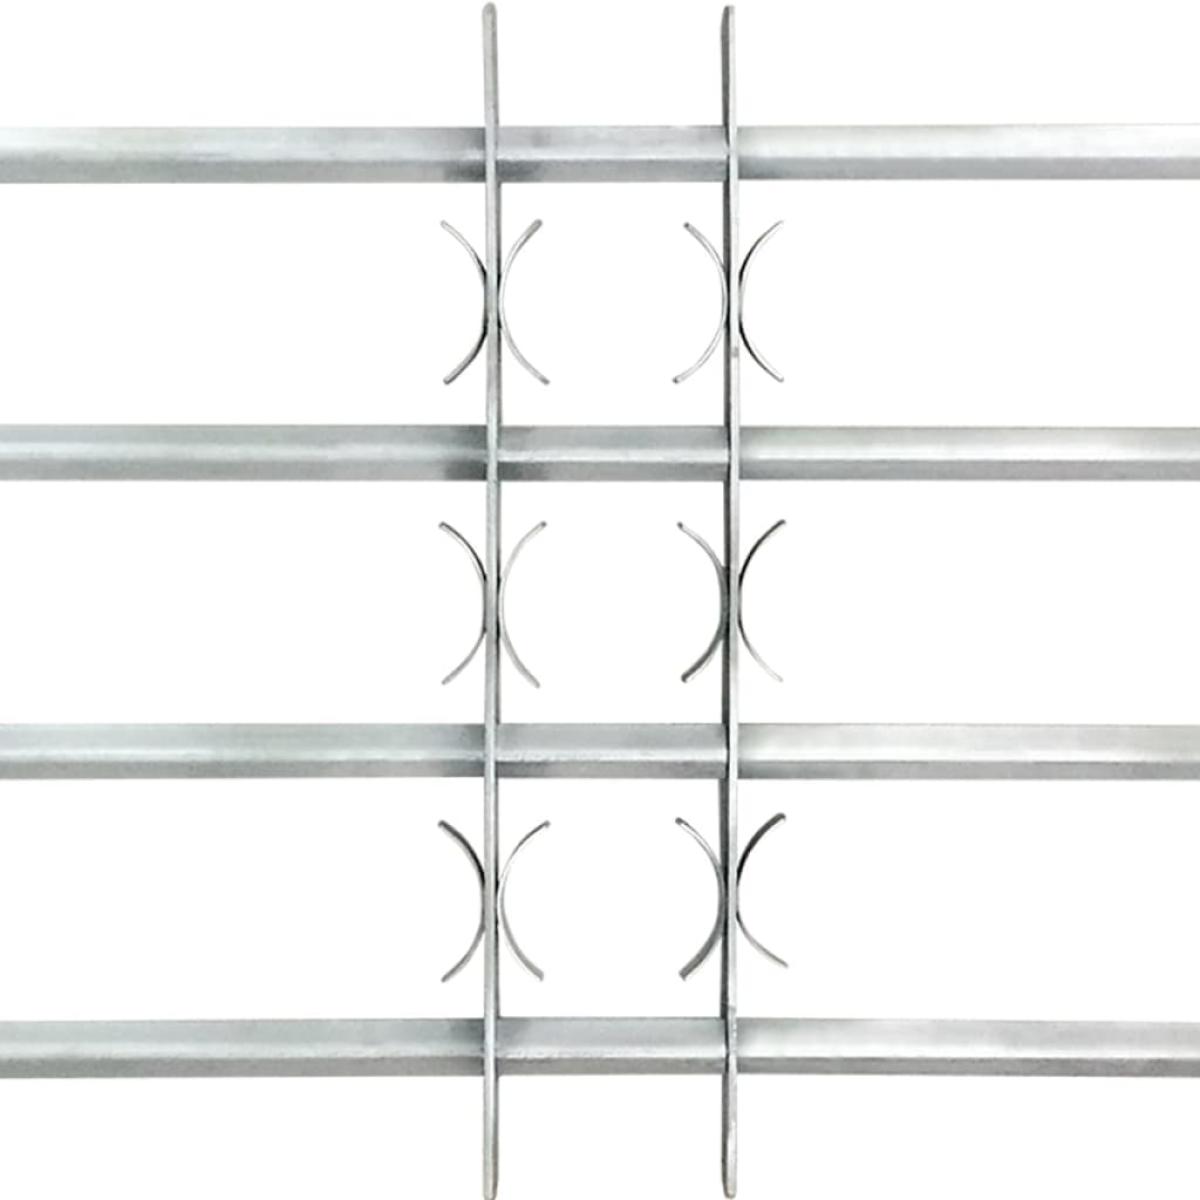 Reja de seguridad ajustable ventana con 4 barras 700-1050 mm